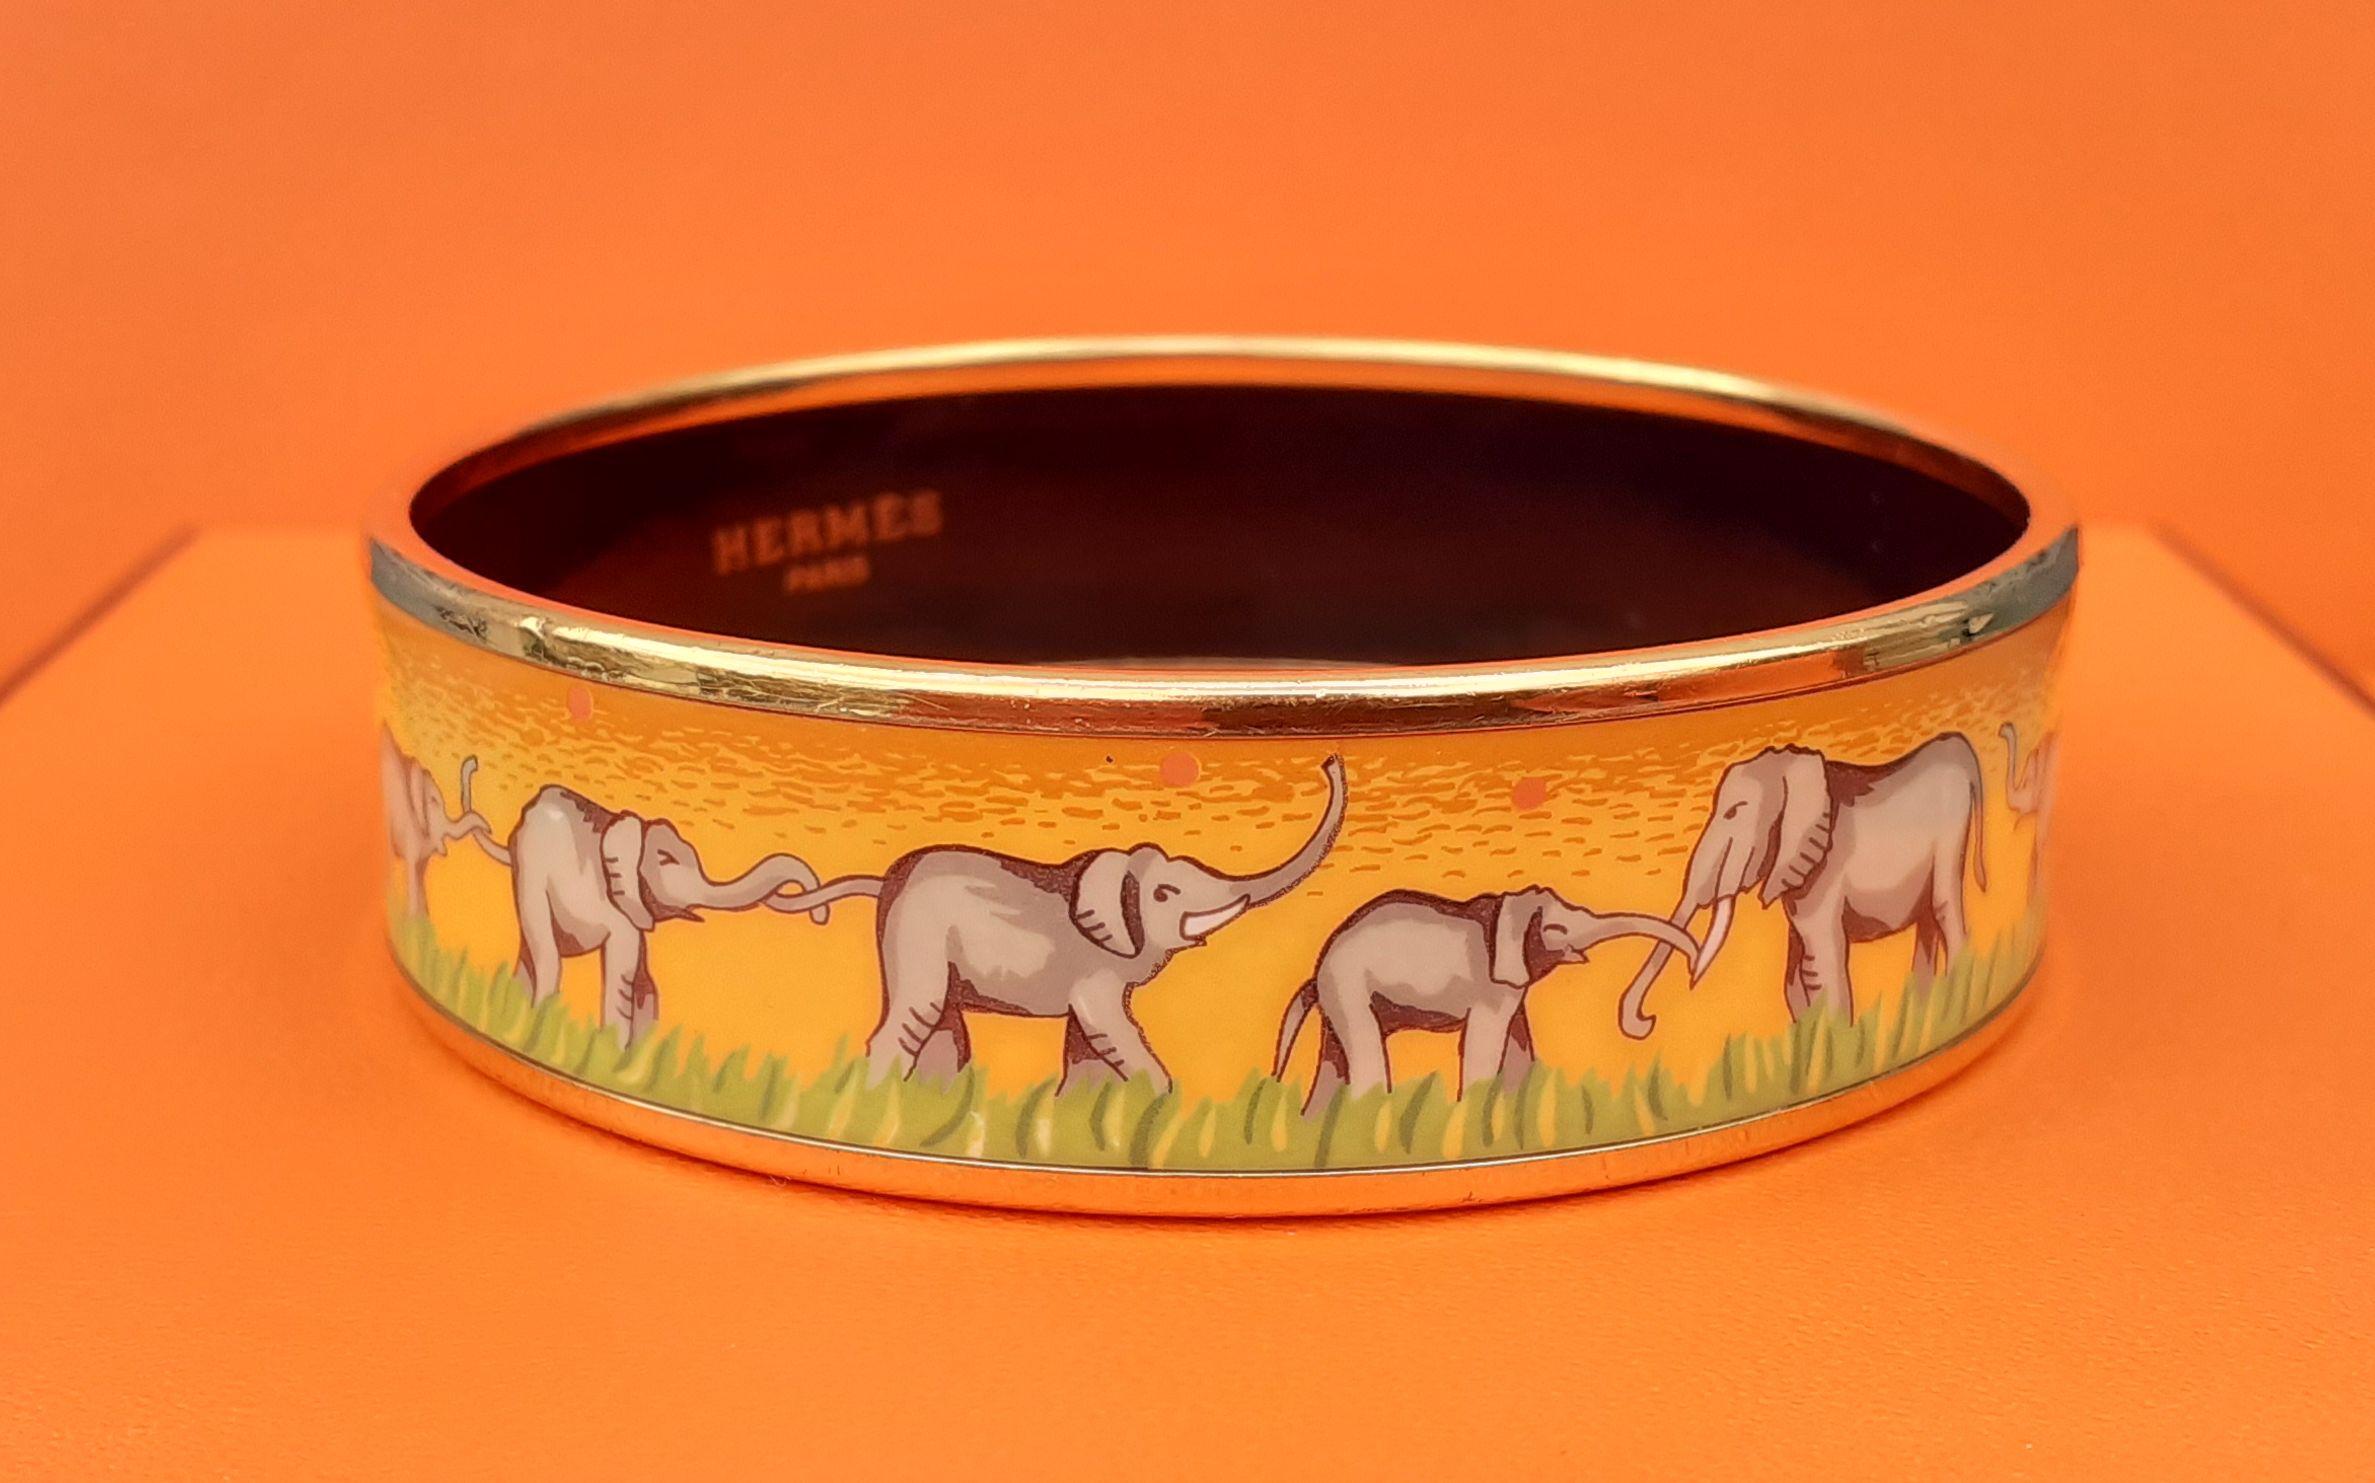 Hermès Enamel Printed Bracelet Elephants Grazing Yellow Gold Hdw Size 65 4